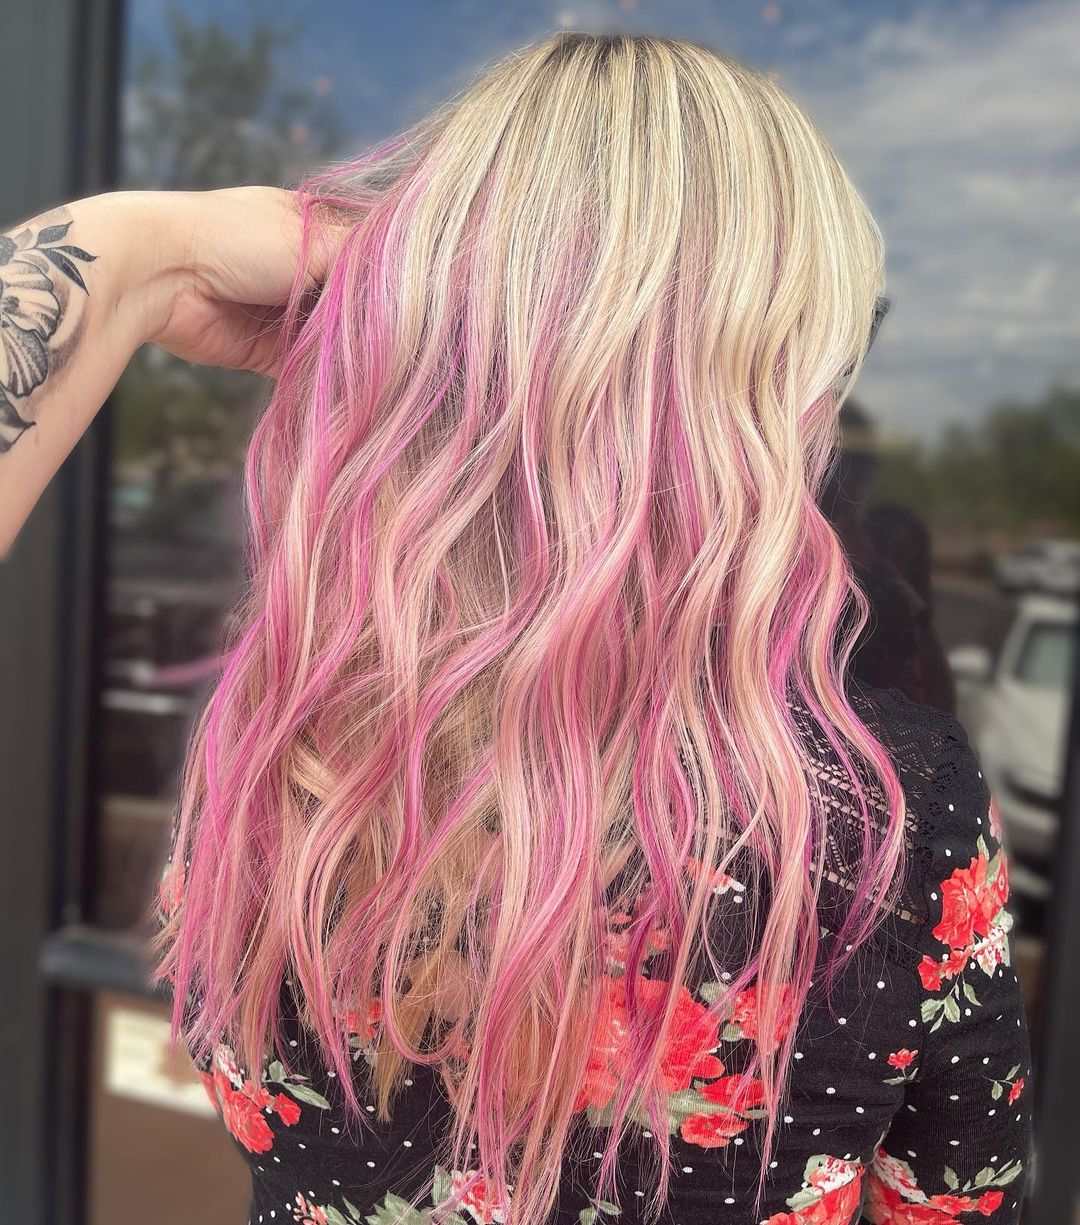 blonde hair with pink streaks